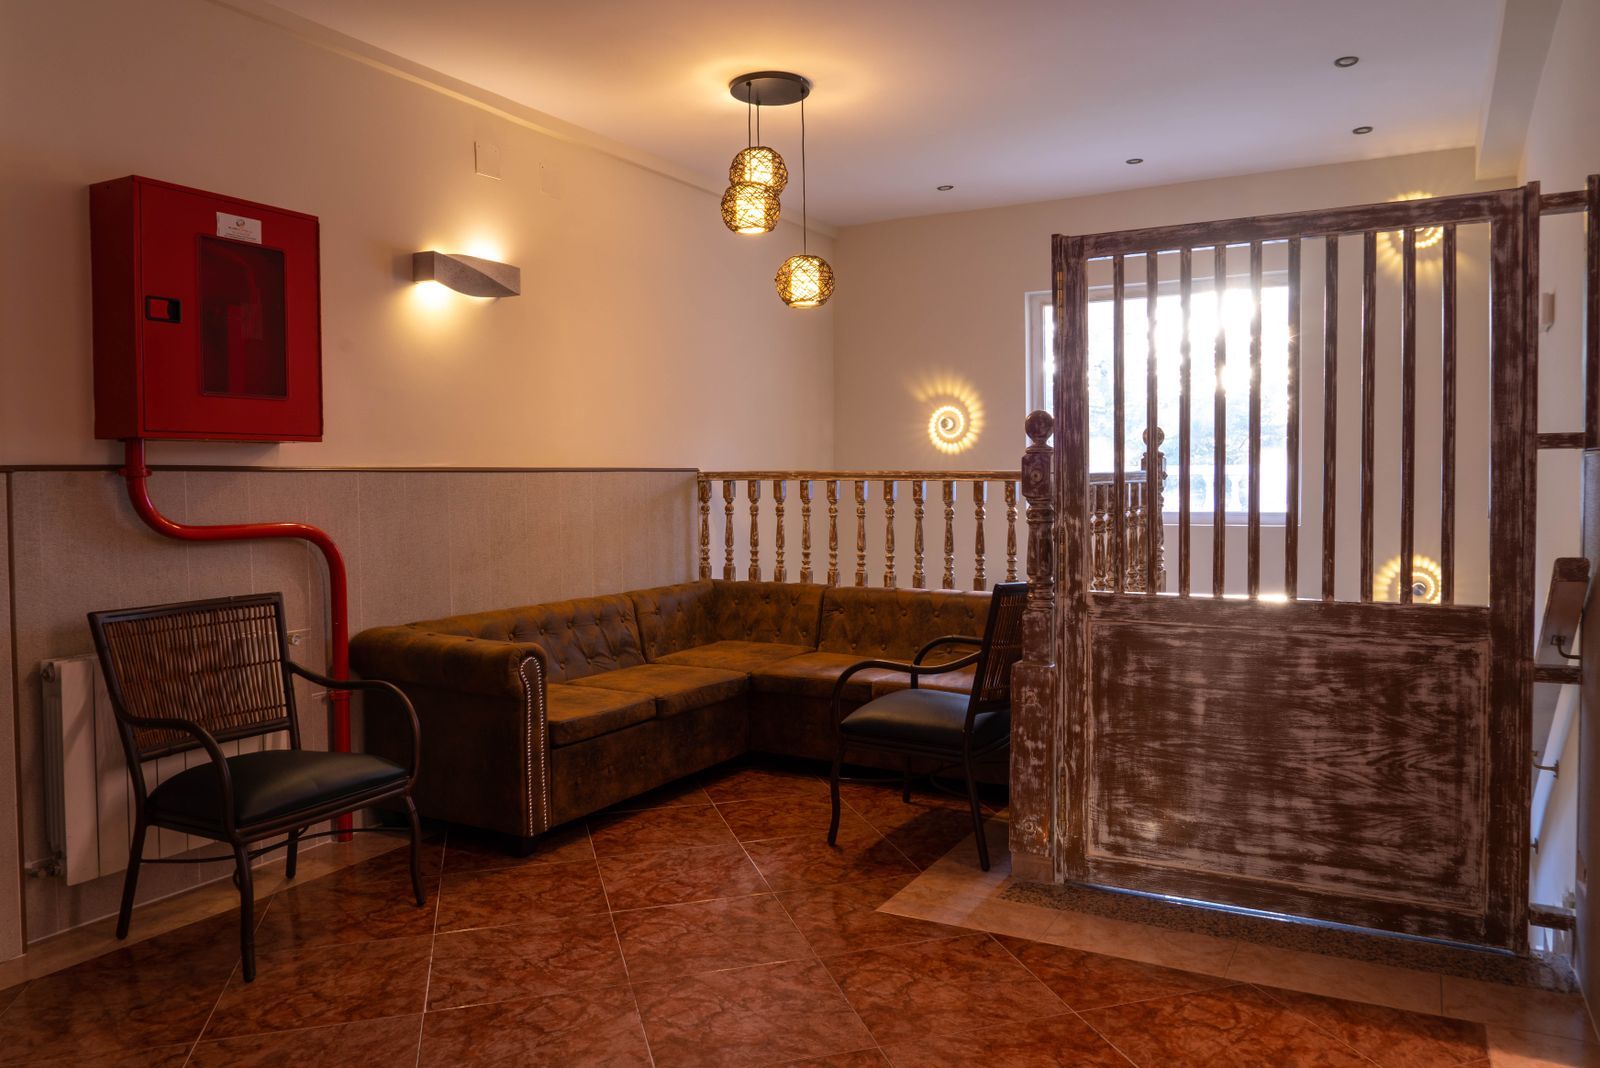 Foto 11 de Residencias geriátricas en Manzanares el Real | Ponderosa Real Hotel Residencia para Mayores